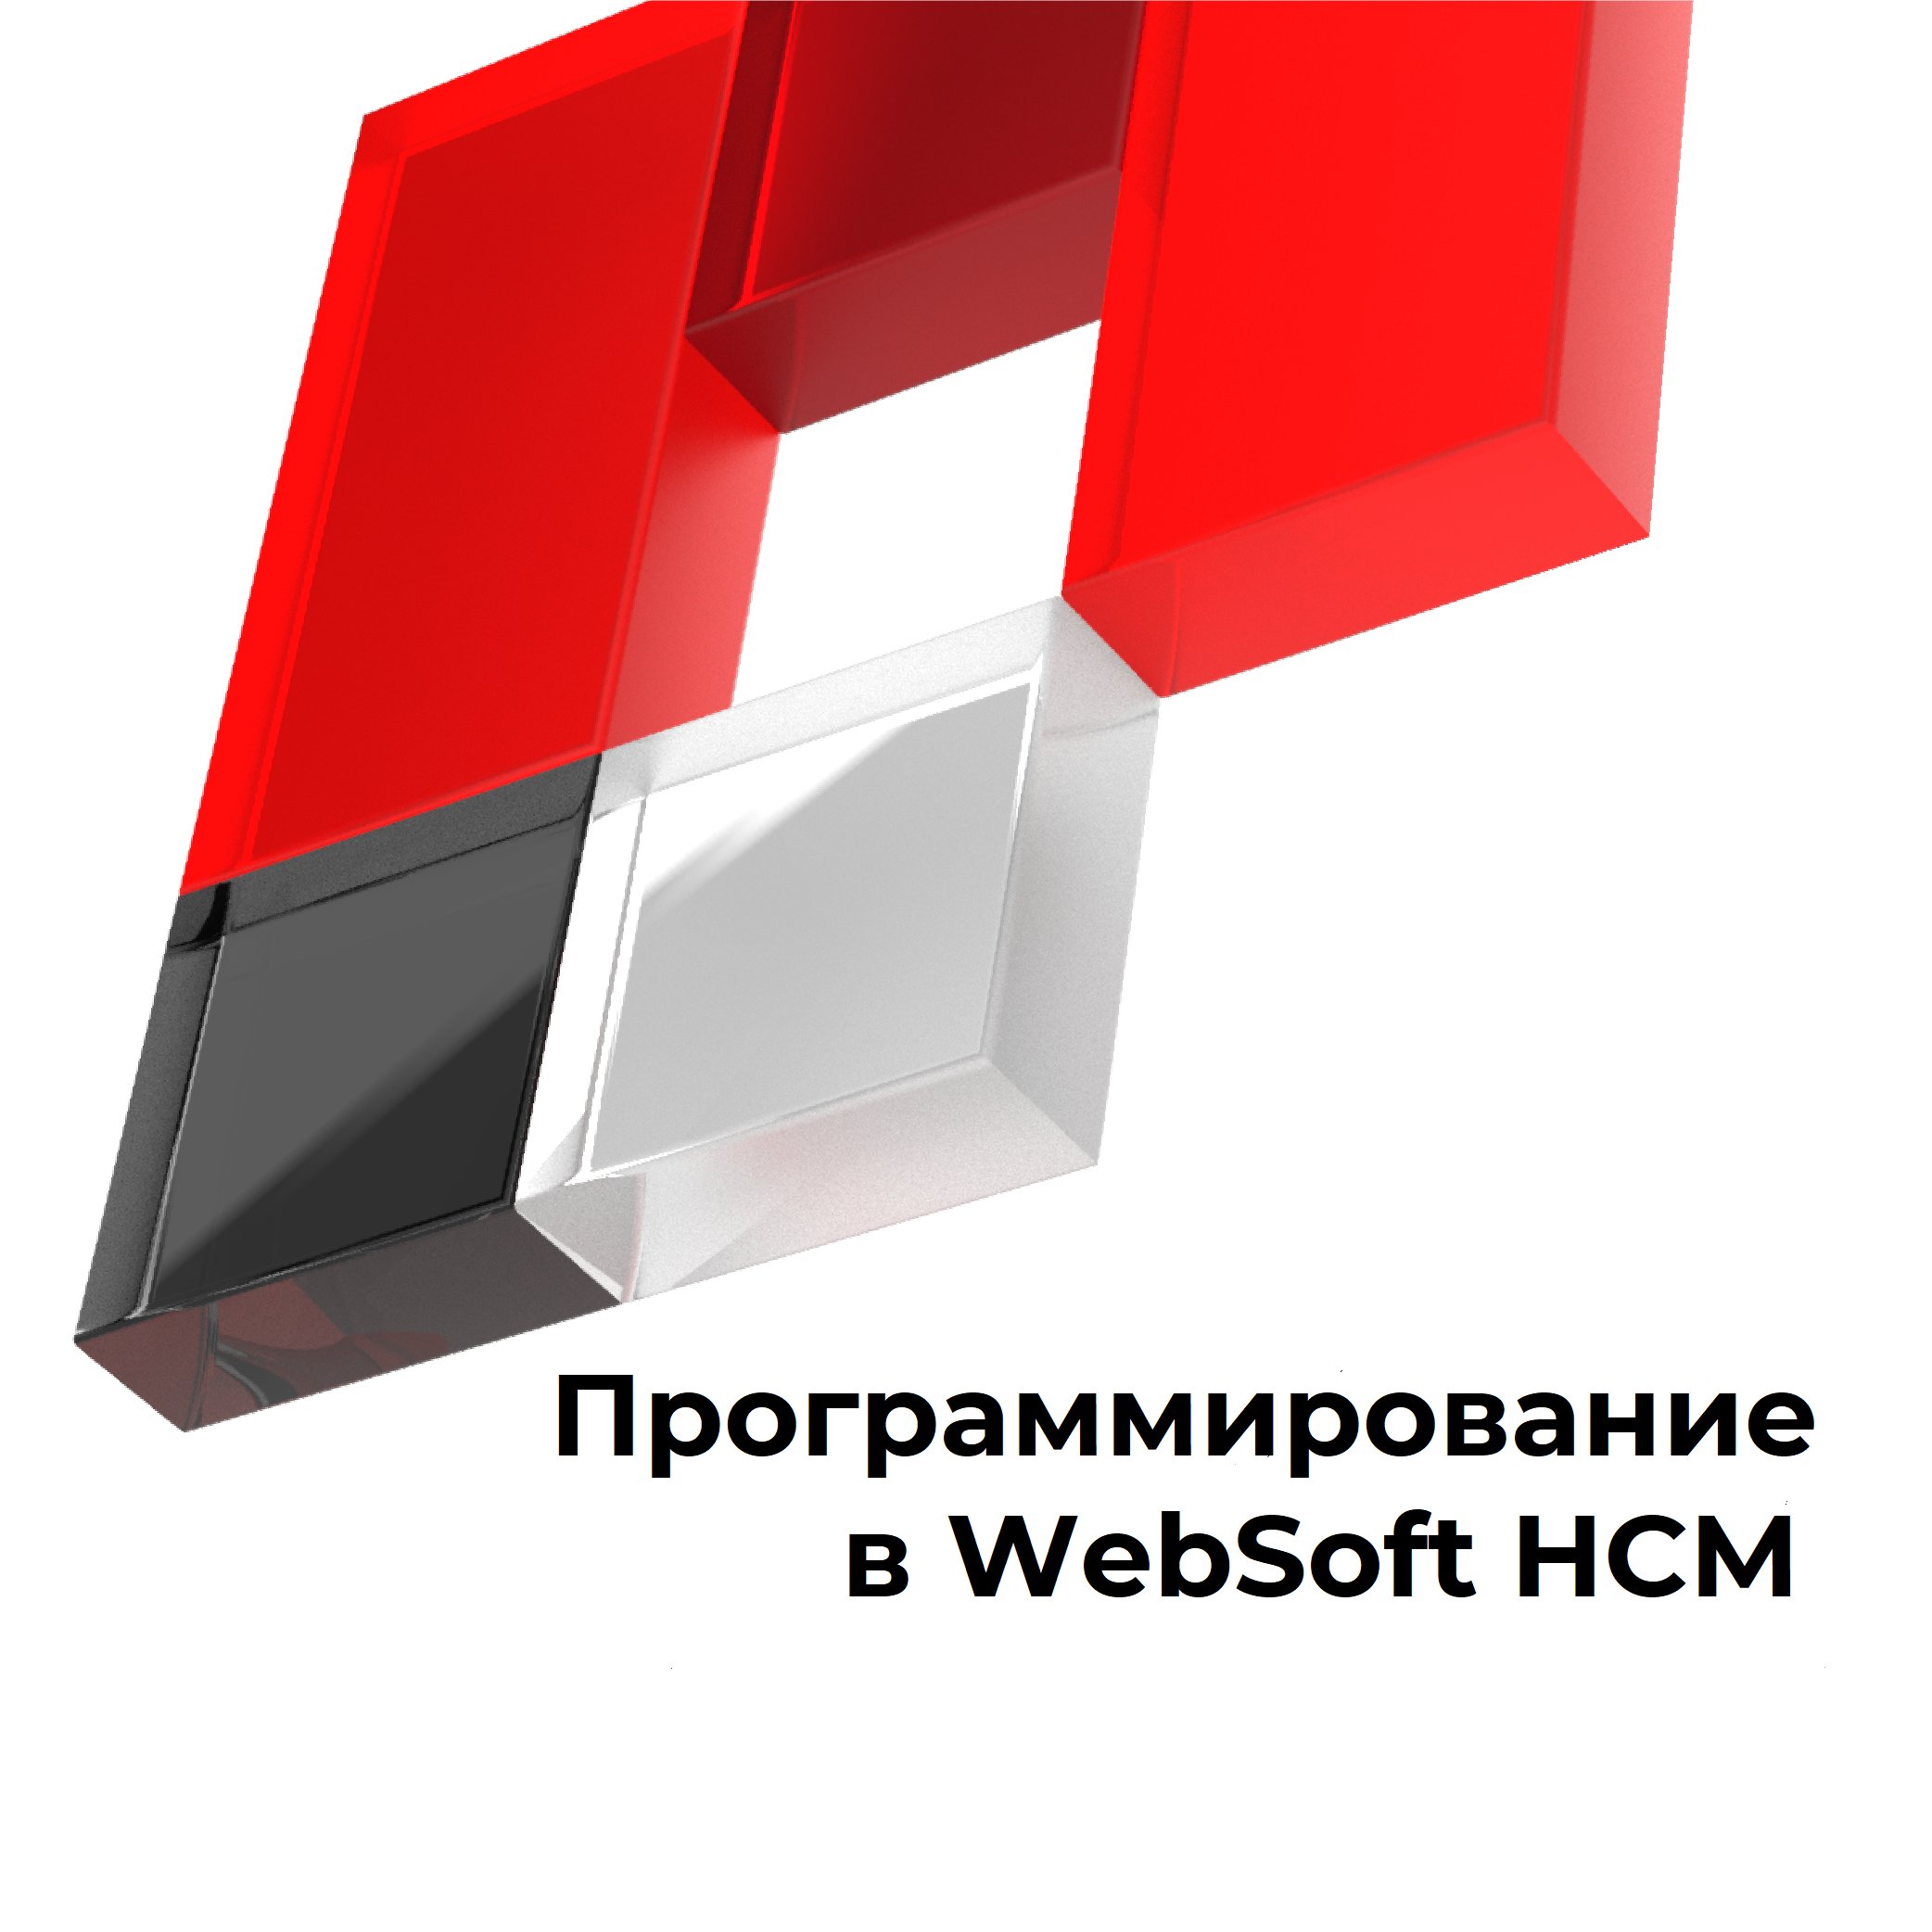 Программирование в WebSoft HCM